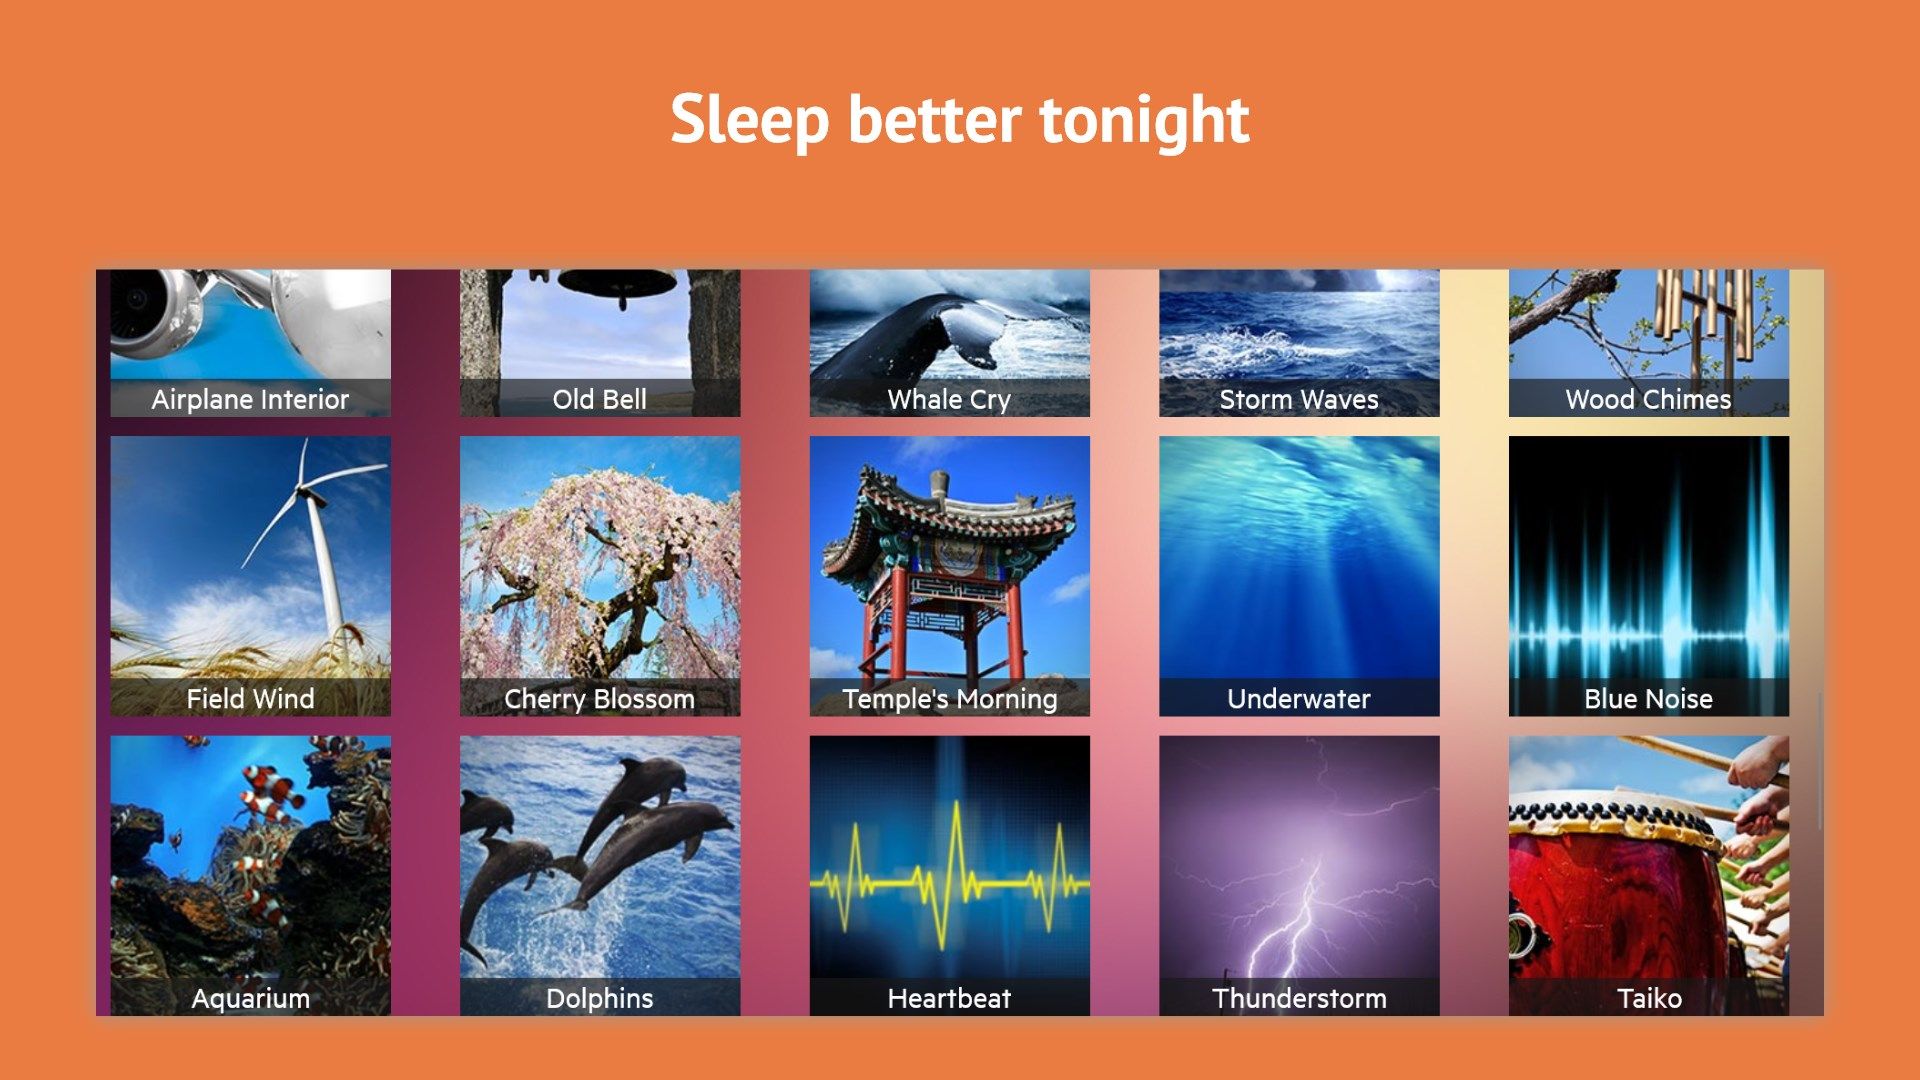 Calm Sleep Sounds